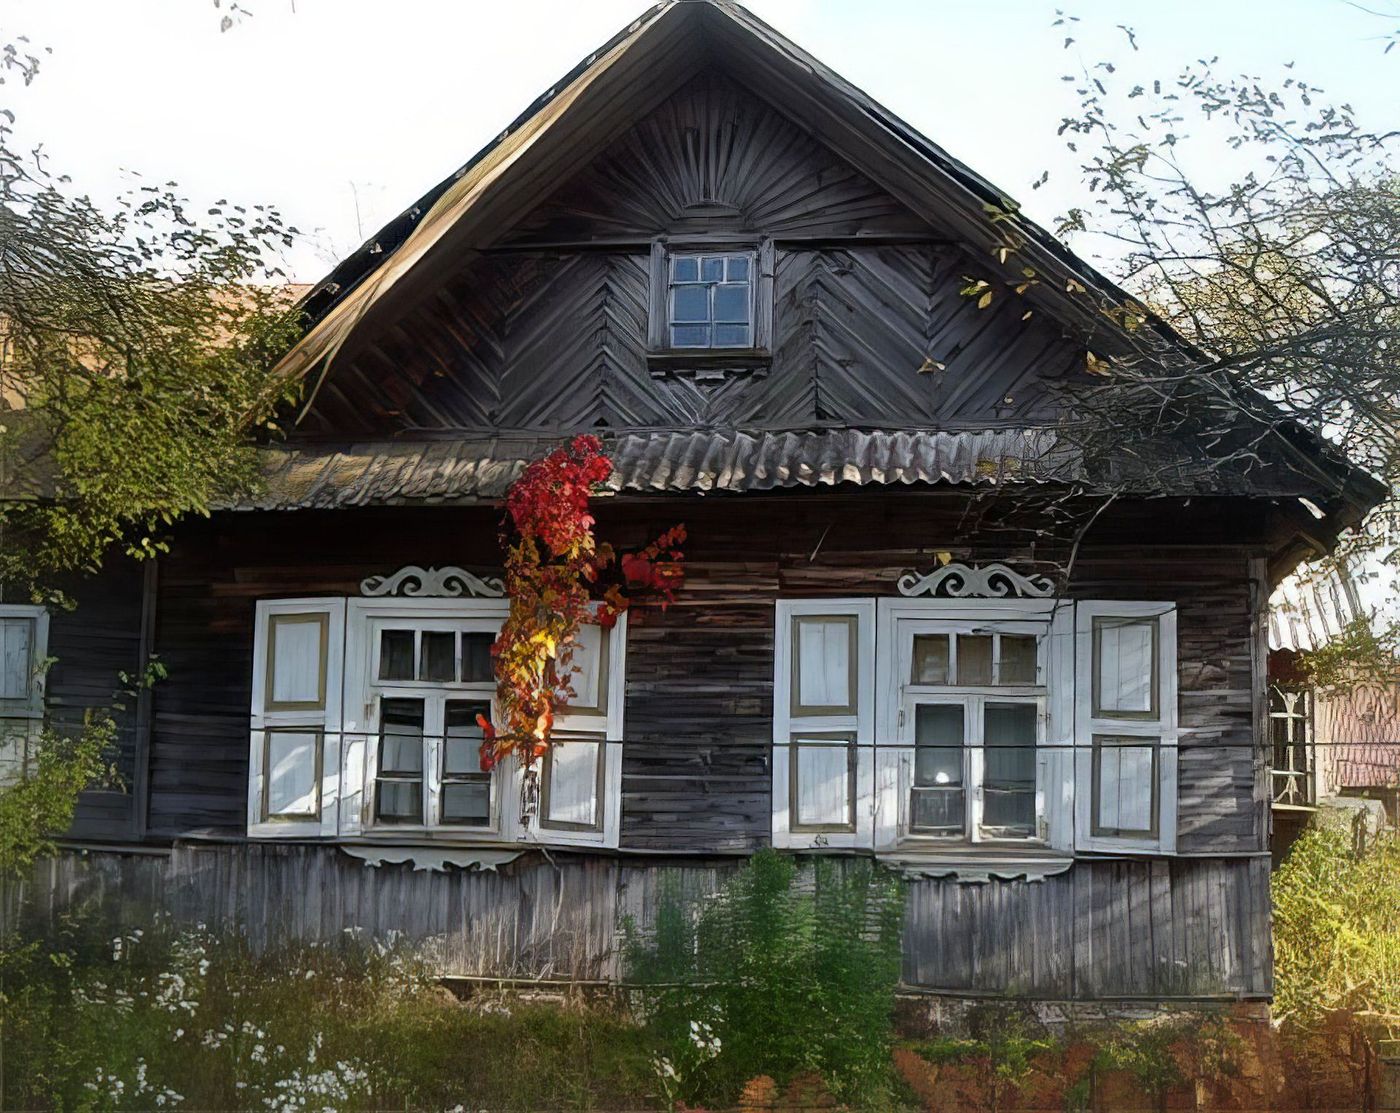 La petite maison dans la prairie lituanienne